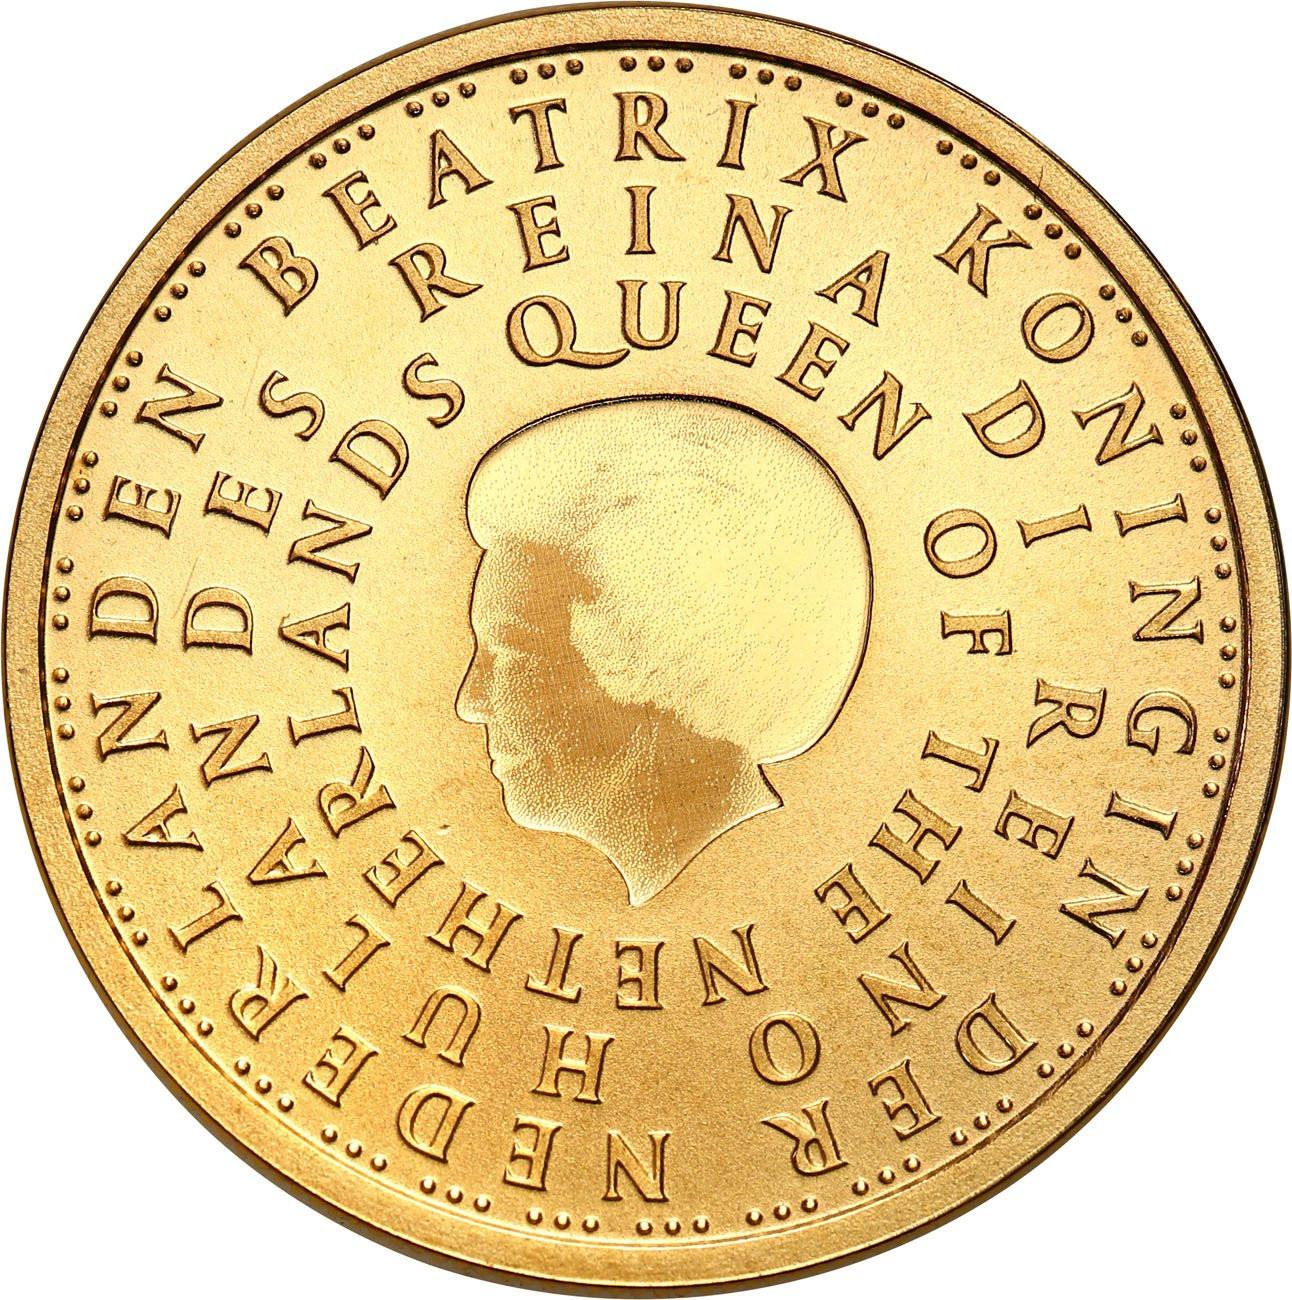 Holandia. 10 Euro 2004 - Queen Beatrix